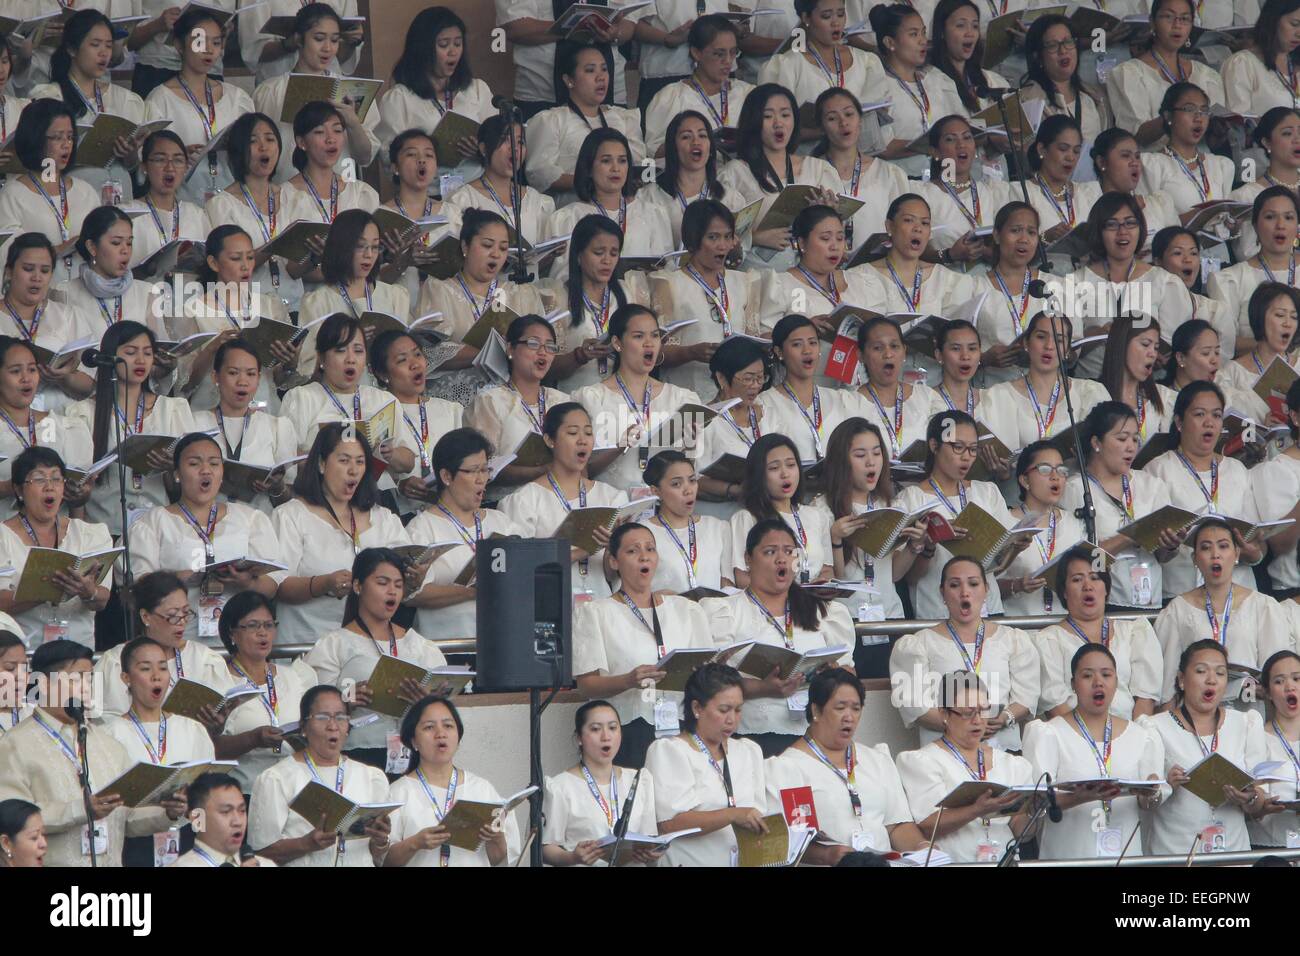 Manila, Filipinas. 18 ene, 2018. Una vista general del coro cantando en la tribuna Quirino, Parque Rizal asistir el Papa Francis' misa de clausura, el 18 de enero de 2015. La misa fue atendido por una estimación de 6-7 millones de personas. Fotografía por Mark Cristino. Crédito: Mark Fredesjed Cristino/Alamy Live News Foto de stock